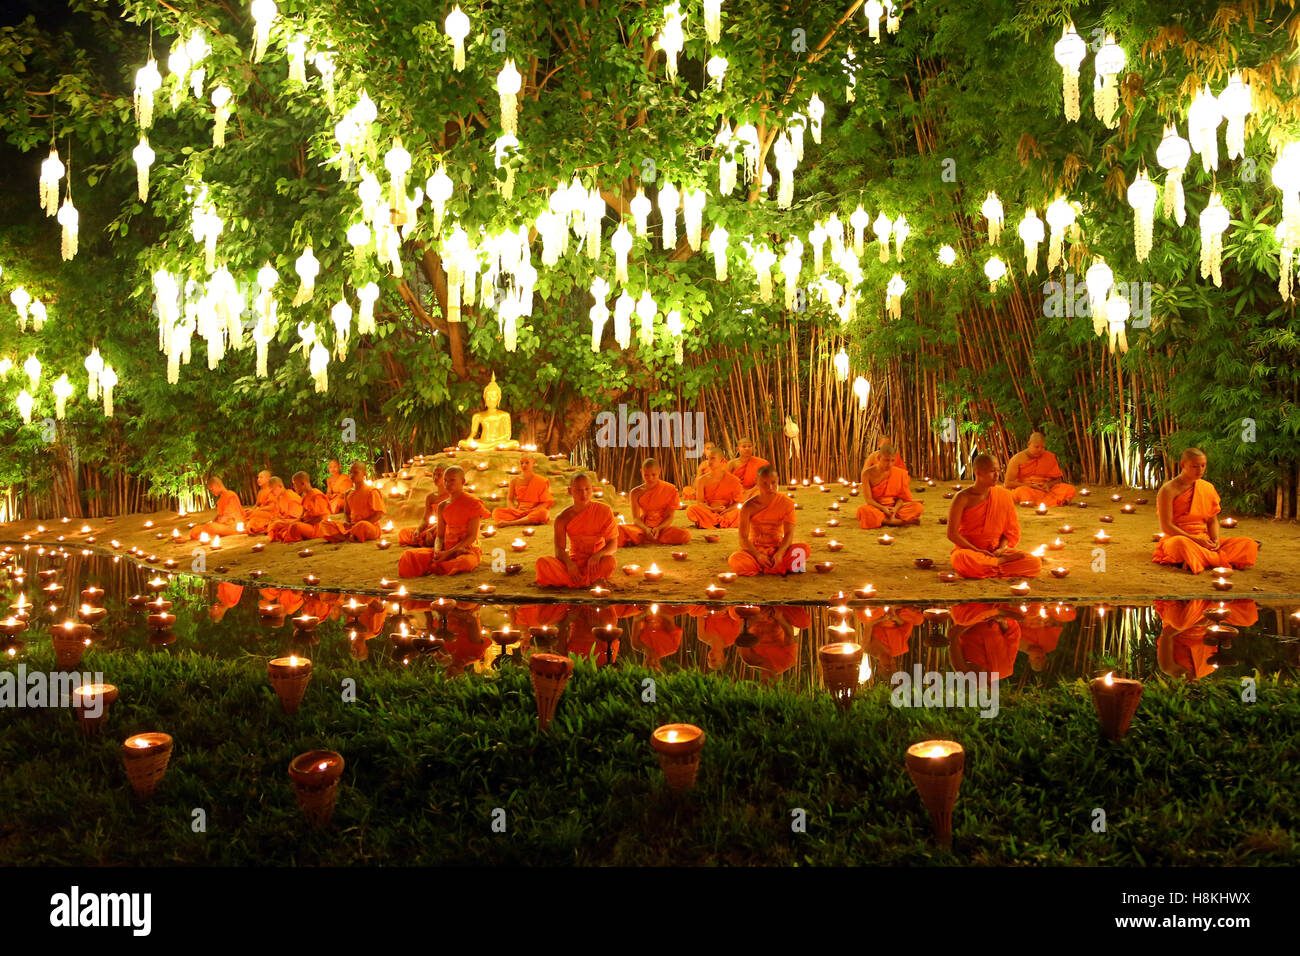 Chiang Mai, Thaïlande. 14 novembre 2016. Moines de célébrer le festival de Loy Krathong à Wat Phan Tao Temple, Chiang Mai, Thaïlande avec des bougies et lanternes de ciel dans une sombre et émouvante cérémonie qui reflète le deuil pour le Roi Bhumibol. Toutes les festivités ont été réduits Loy Krathong à Chiang Mai et à travers la Thaïlande comme une marque de respect, en se concentrant davantage sur les aspects religieux du festival. Crédit : Paul Brown/Alamy Live News Banque D'Images